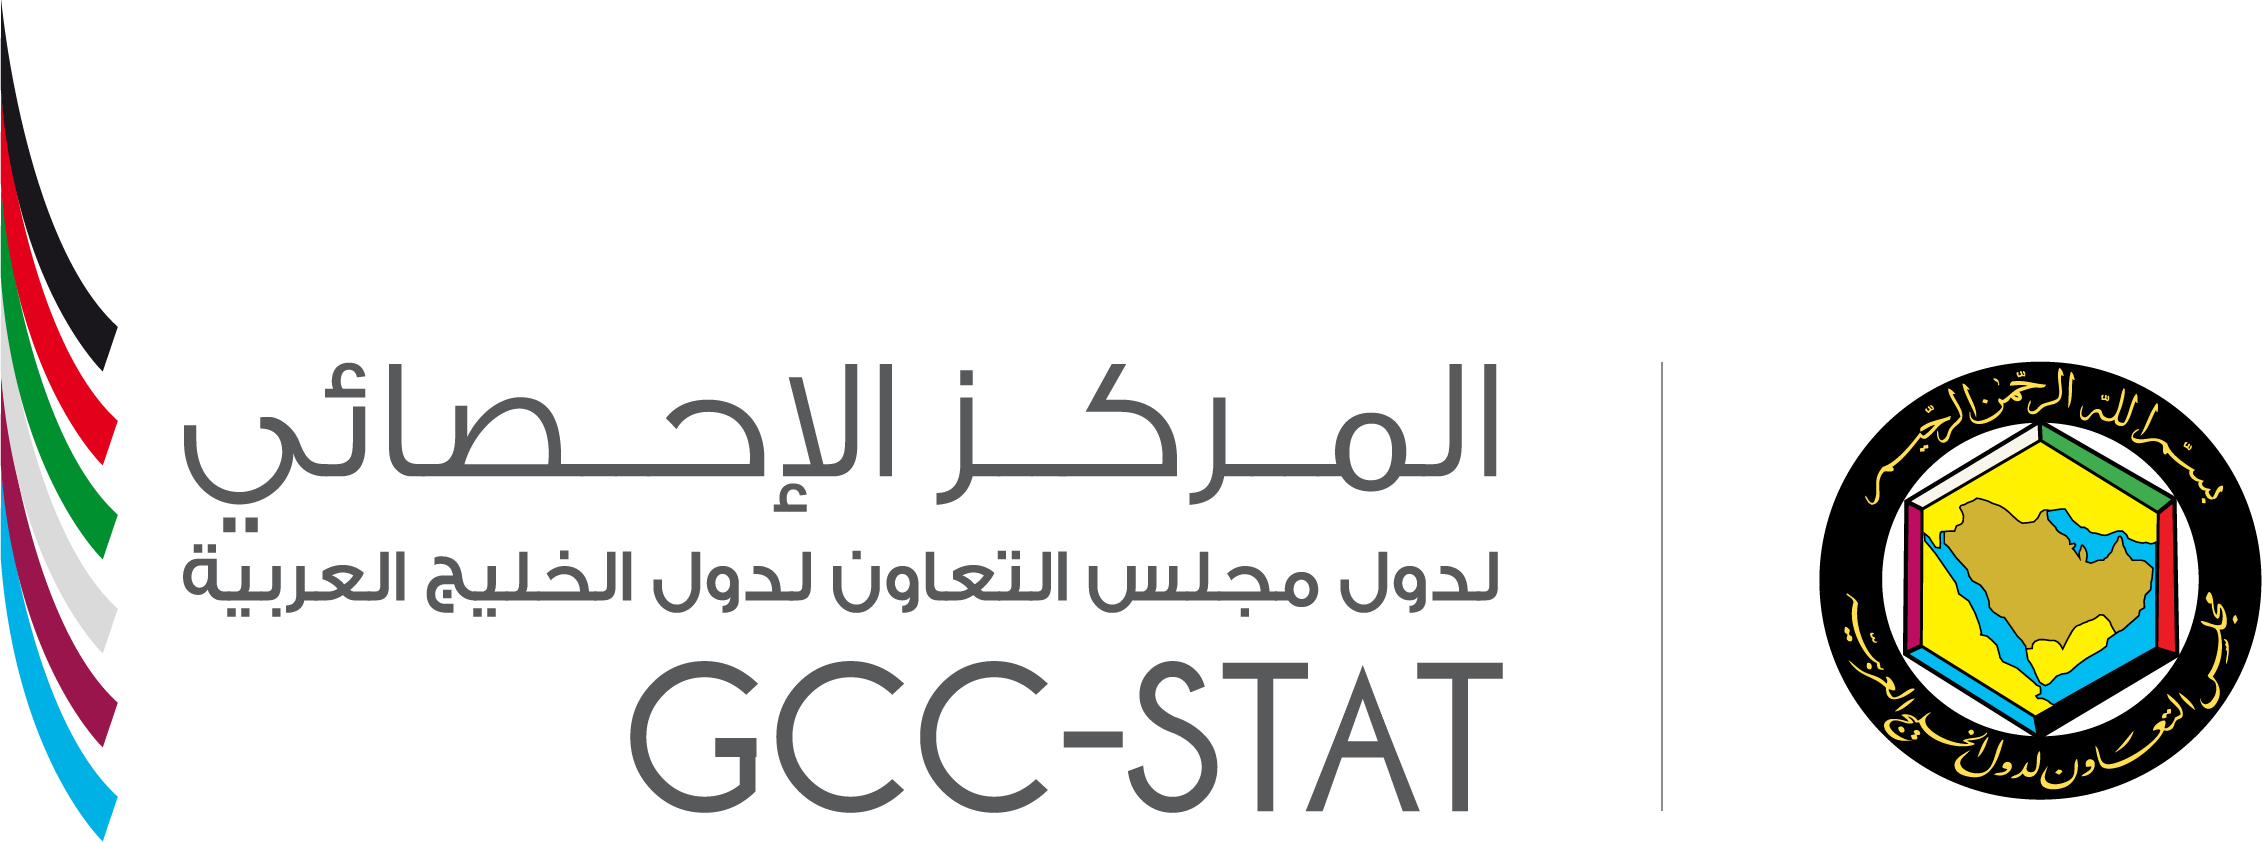 GCC-STAT